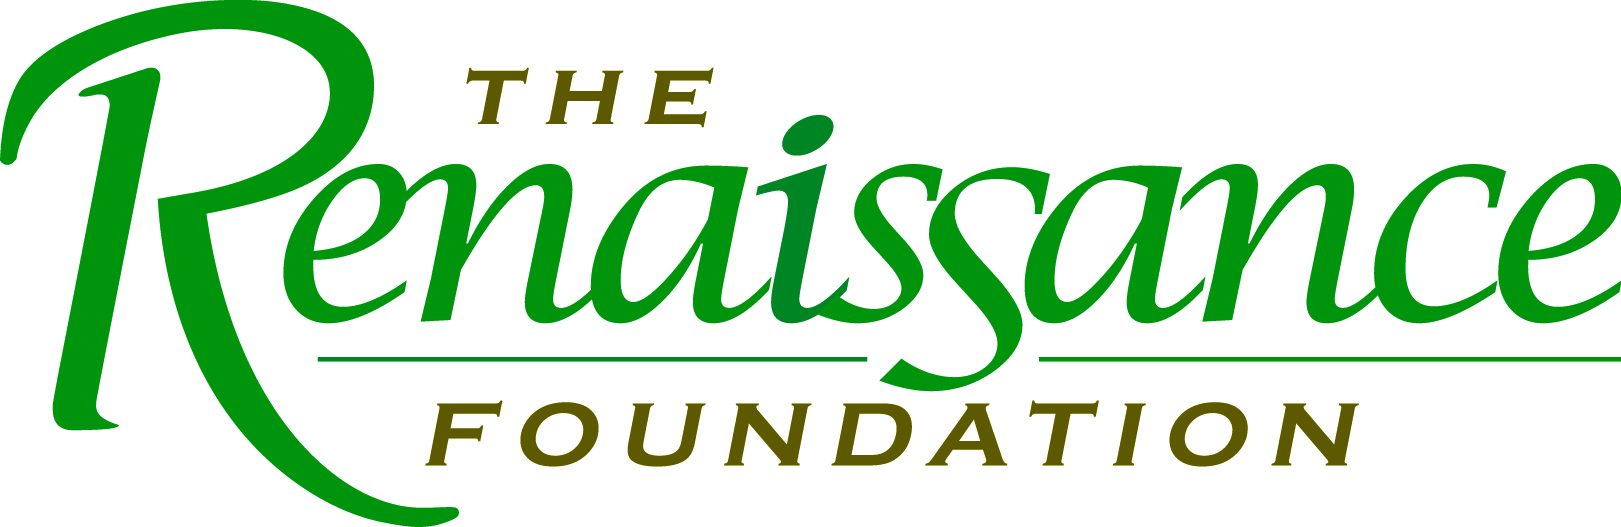 The Renaissance Foundation